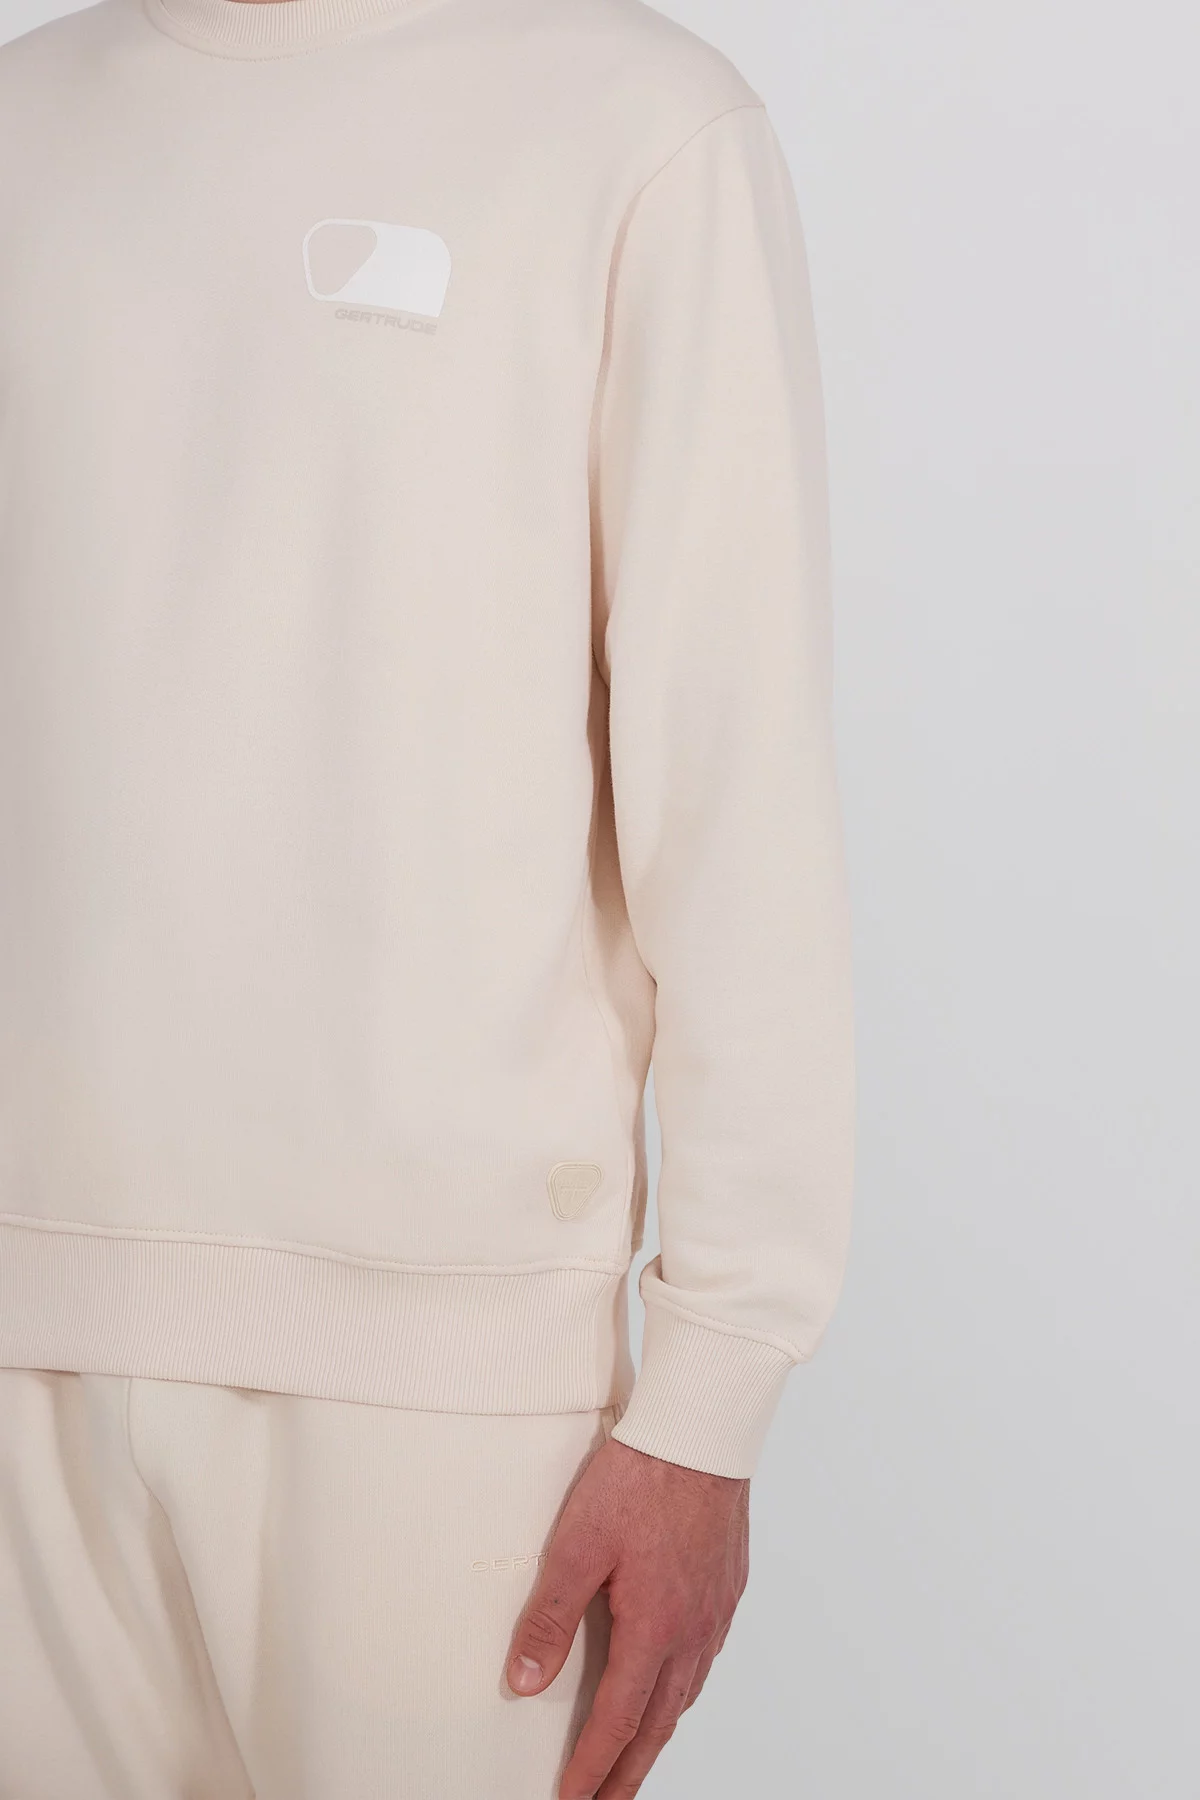 Guillaume Poster unisex round neck sweatshirt